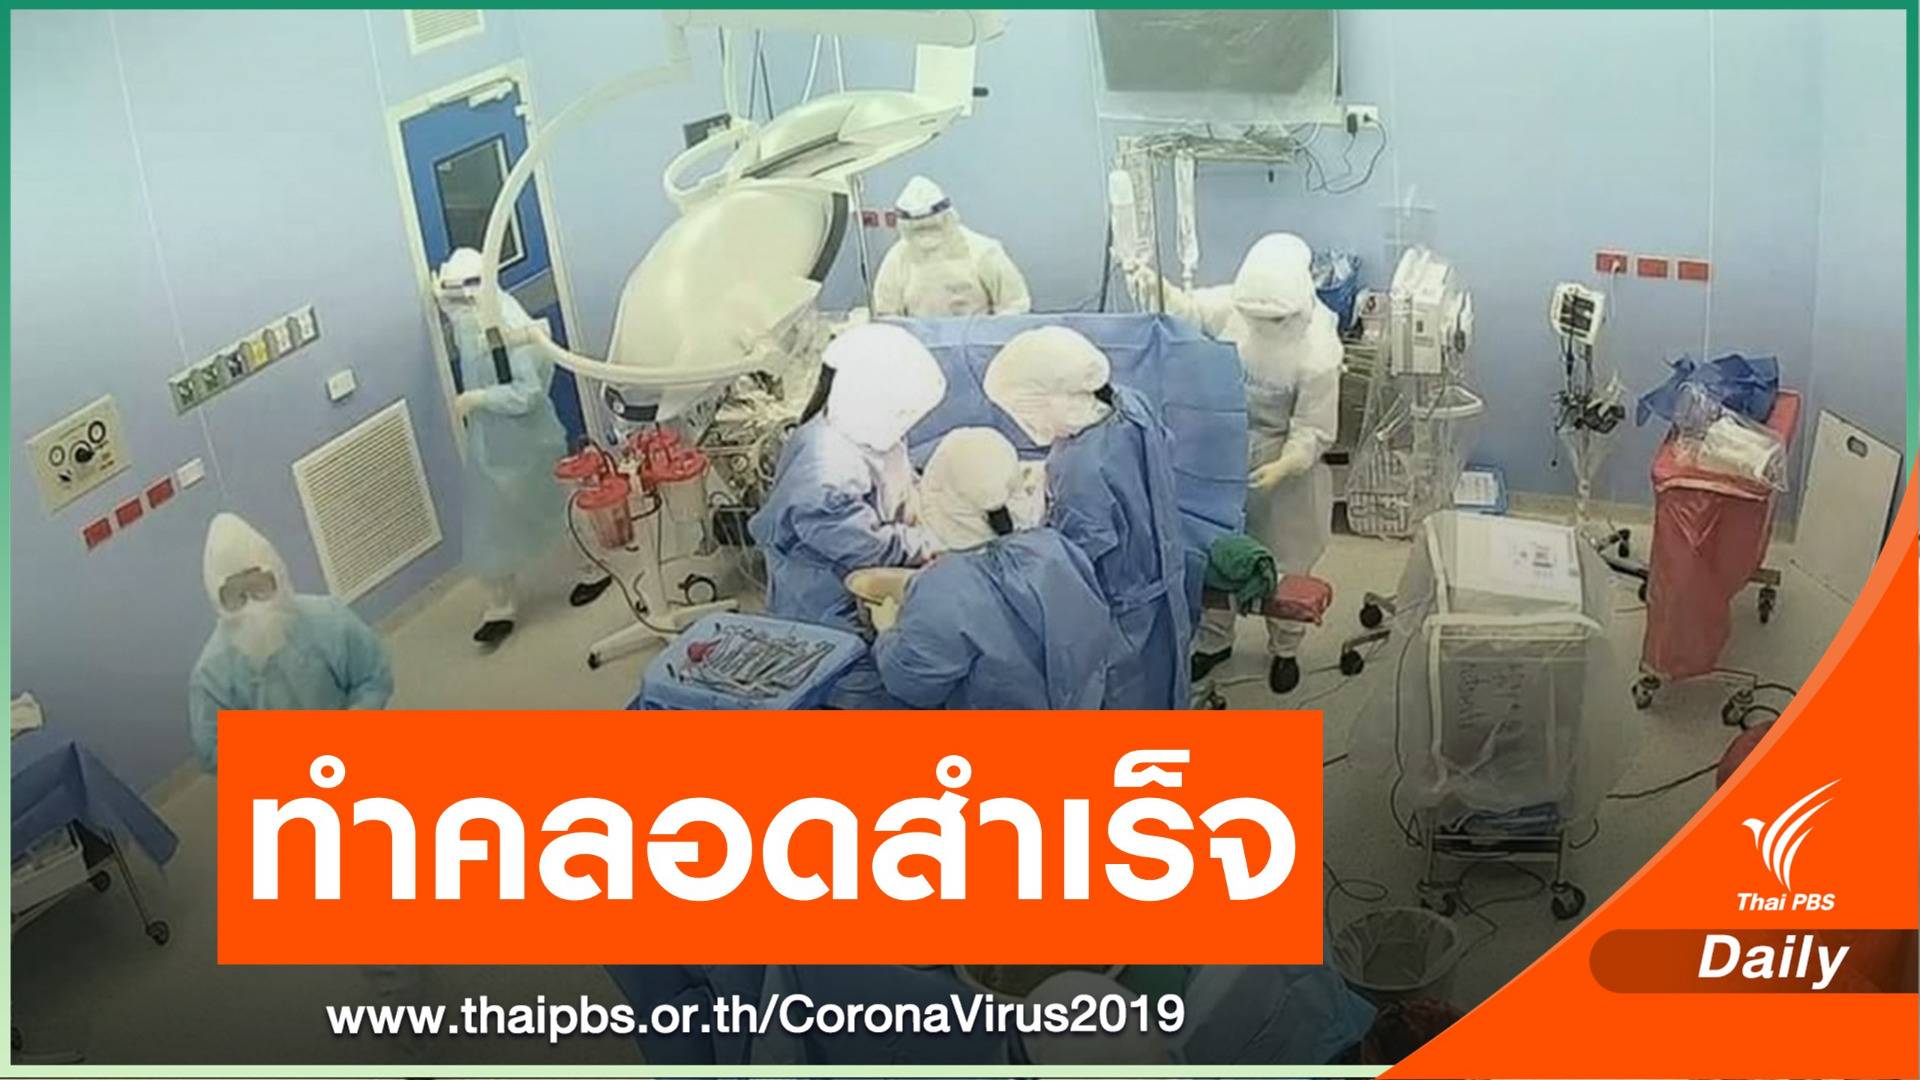 รพ.นครพิงค์ ผ่าตัดคลอดผู้ป่วย COVID-19 ปลอดภัยทั้งแม่และลูก